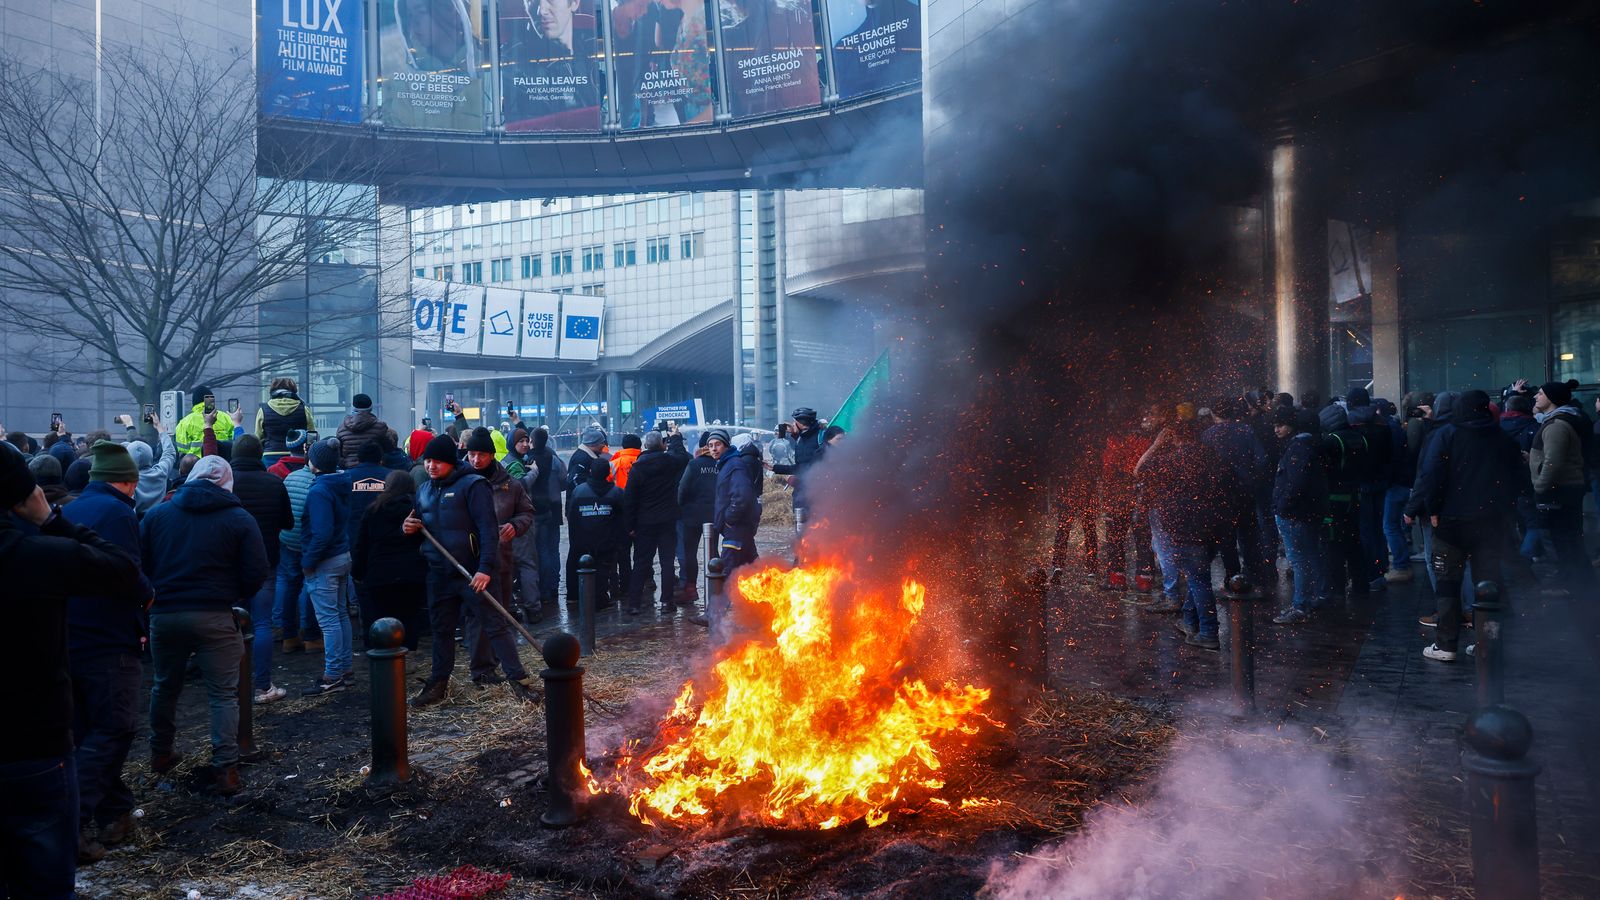 Фойерверки експлодират и гъст дим изпълва въздуха, докато кипящите фермери пристигат пред вратата на Брюксел